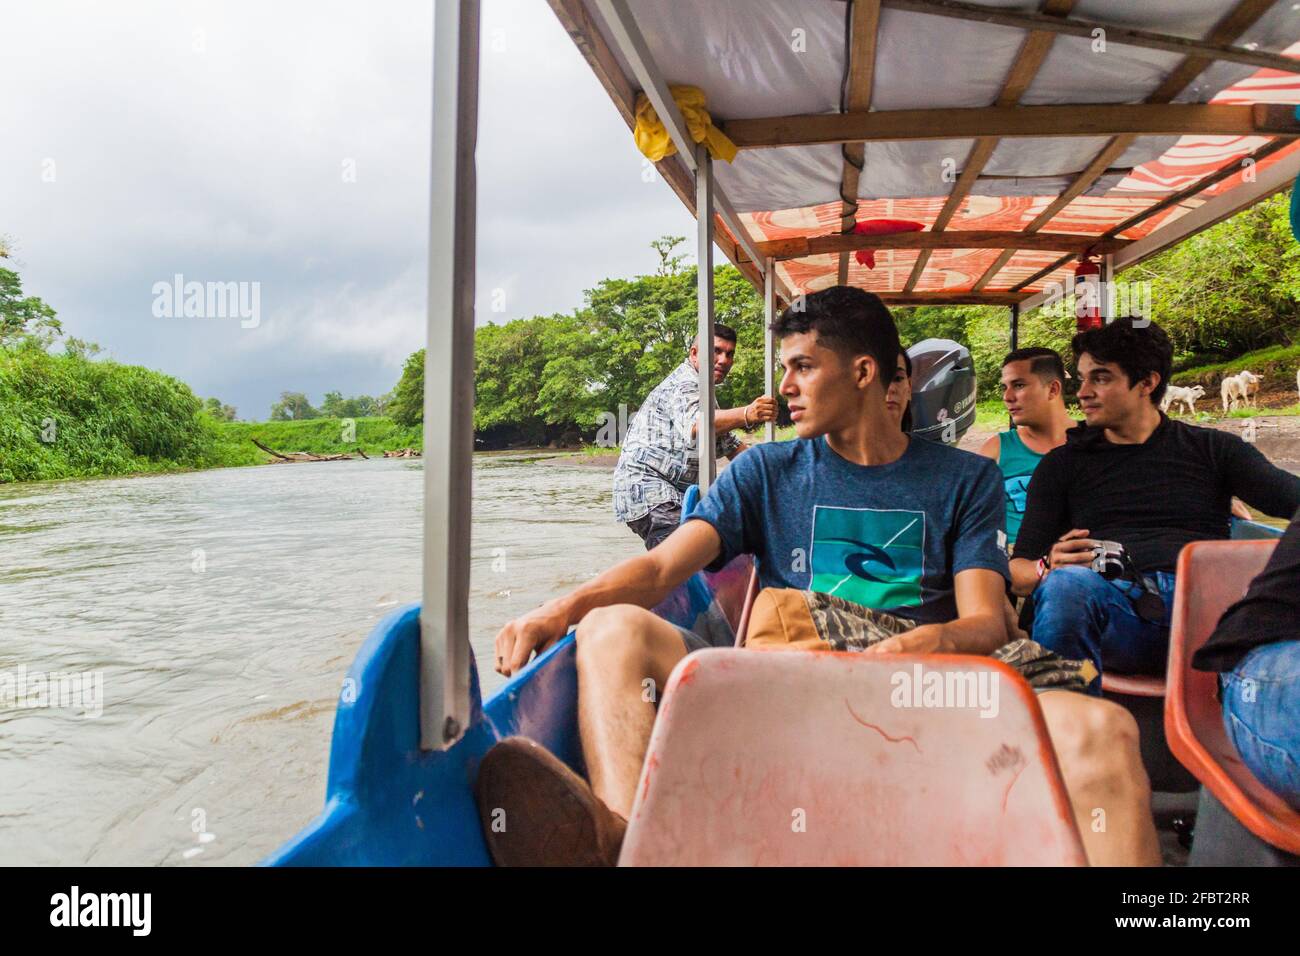 LA MUERTE, COSTA RICA - 14 DE MAYO de 2016: Pasajeros de un barco que viaja desde La Pavona hasta Tortuguero en el río La suerte. Foto de stock